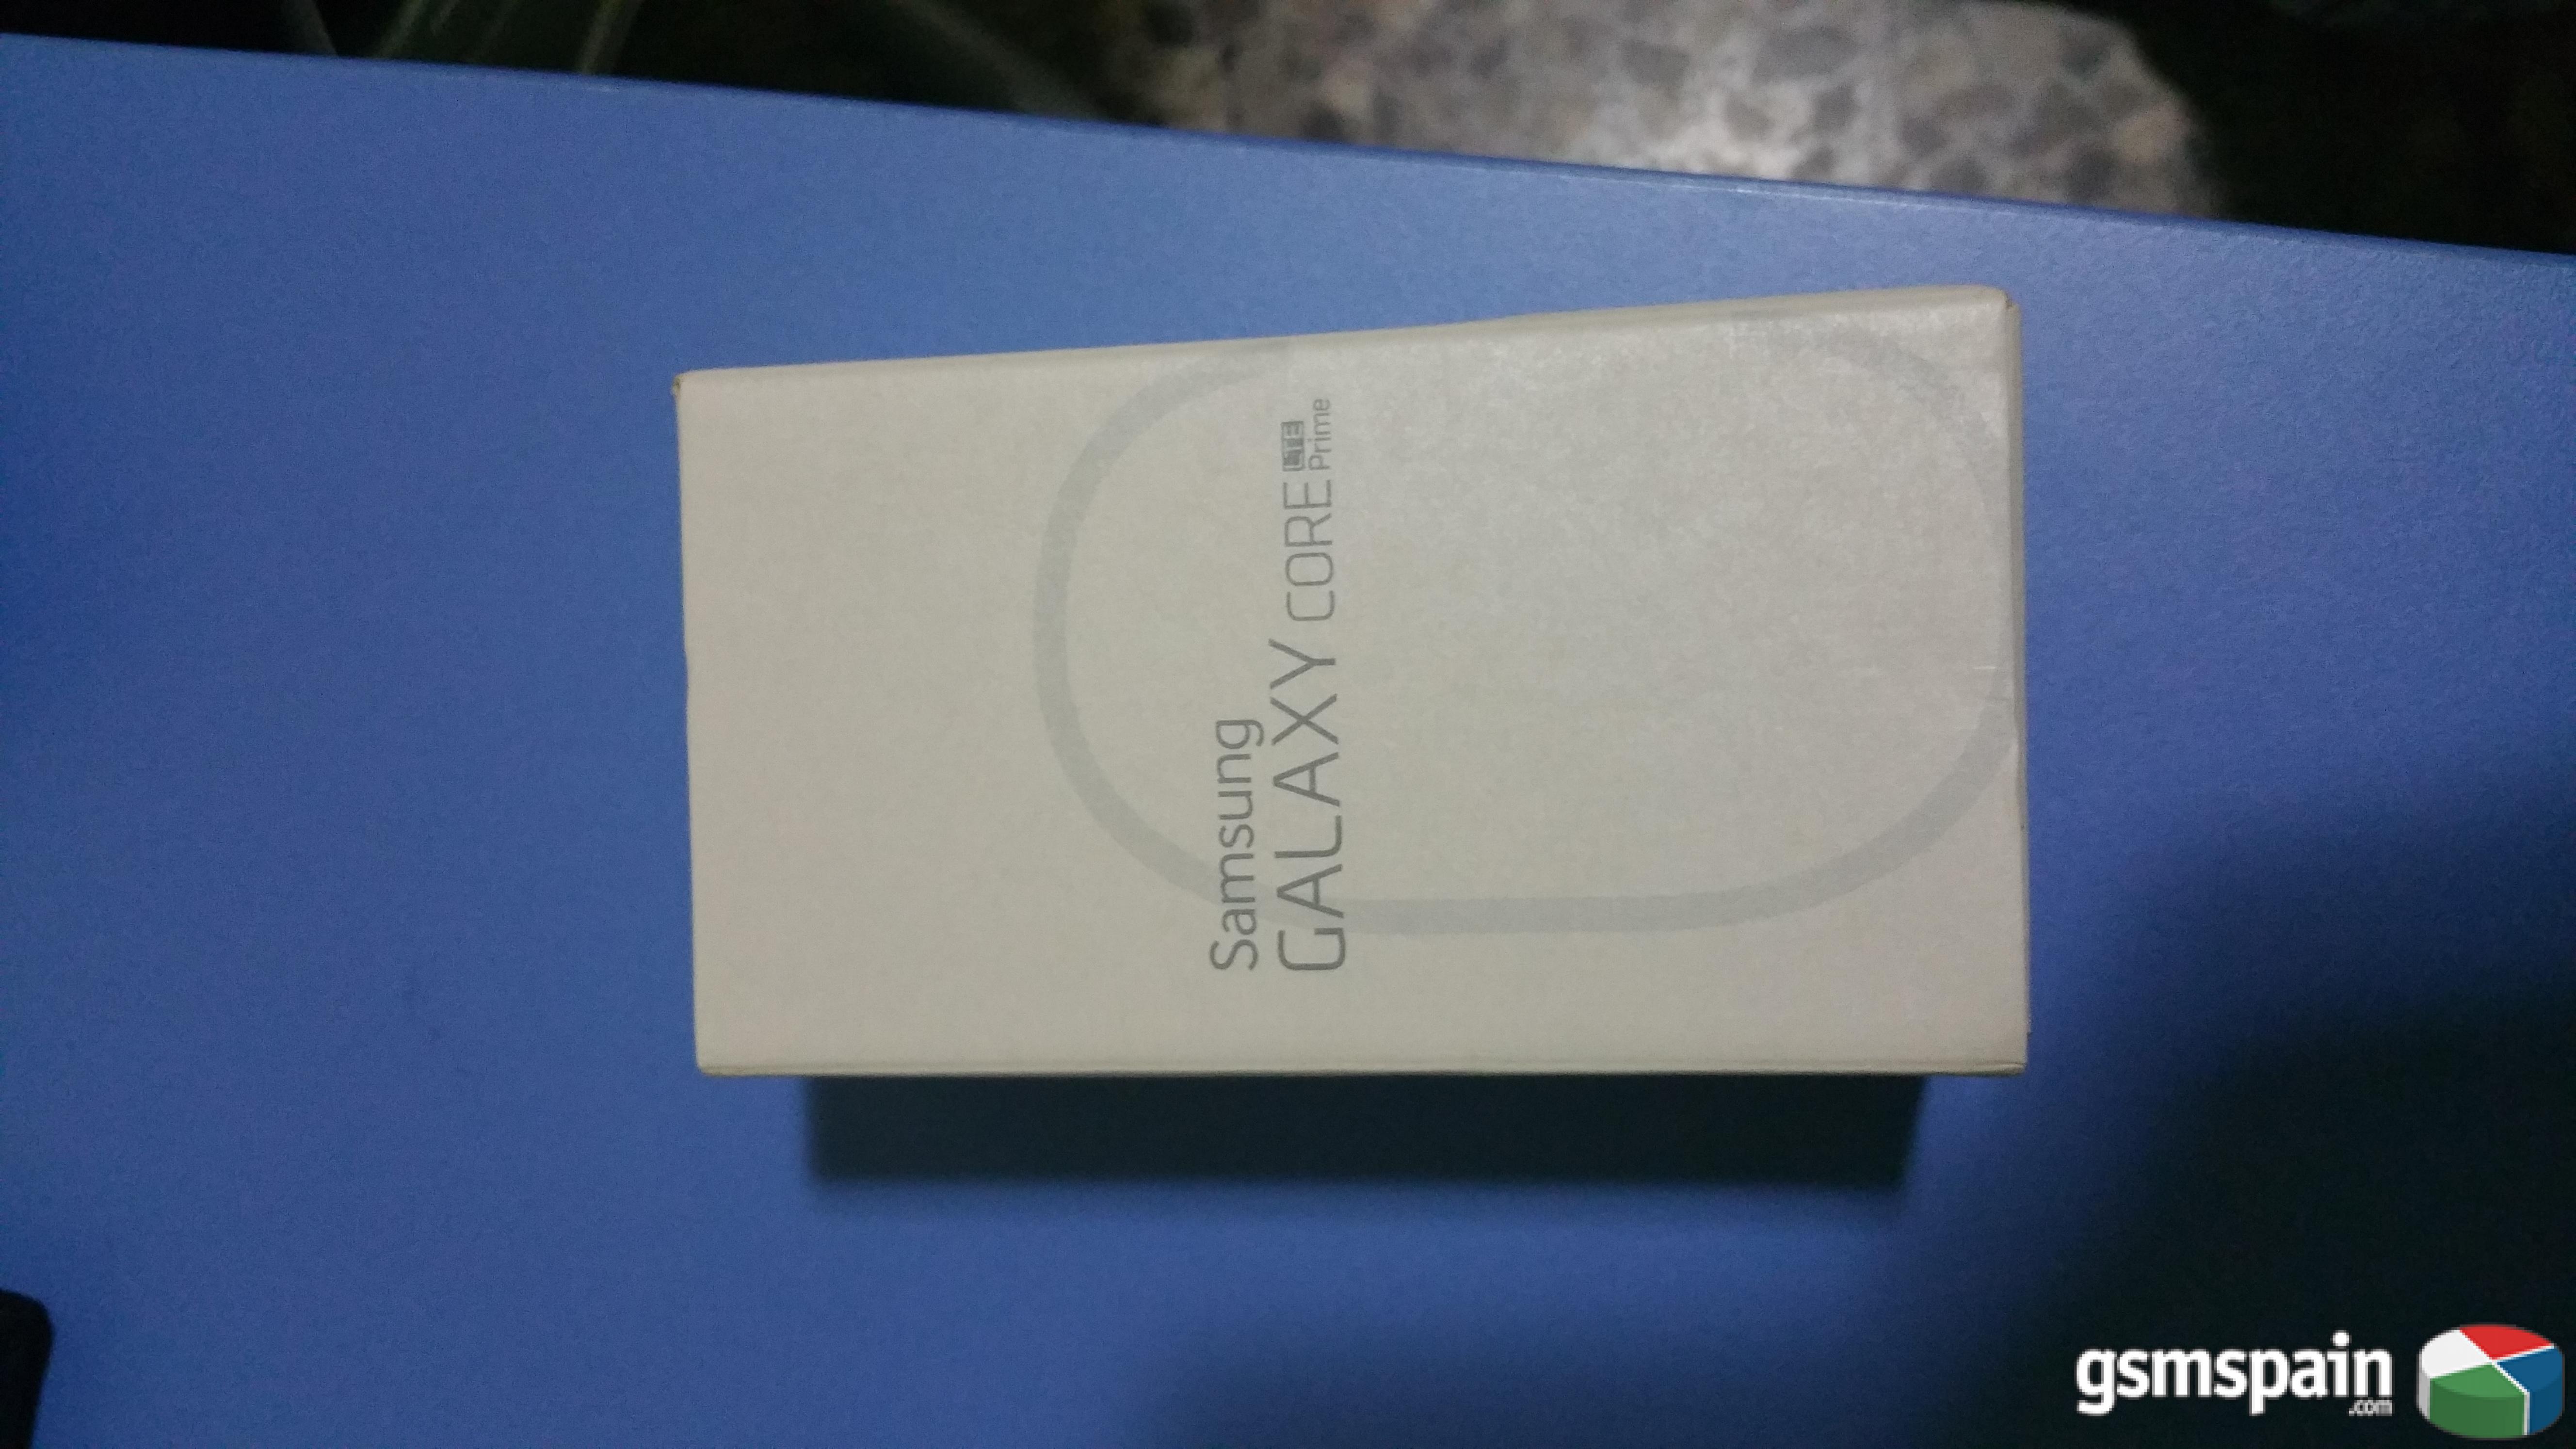 [vendo] Samsung Galaxy Core Prime Libre A Estrenar(99 Euros)